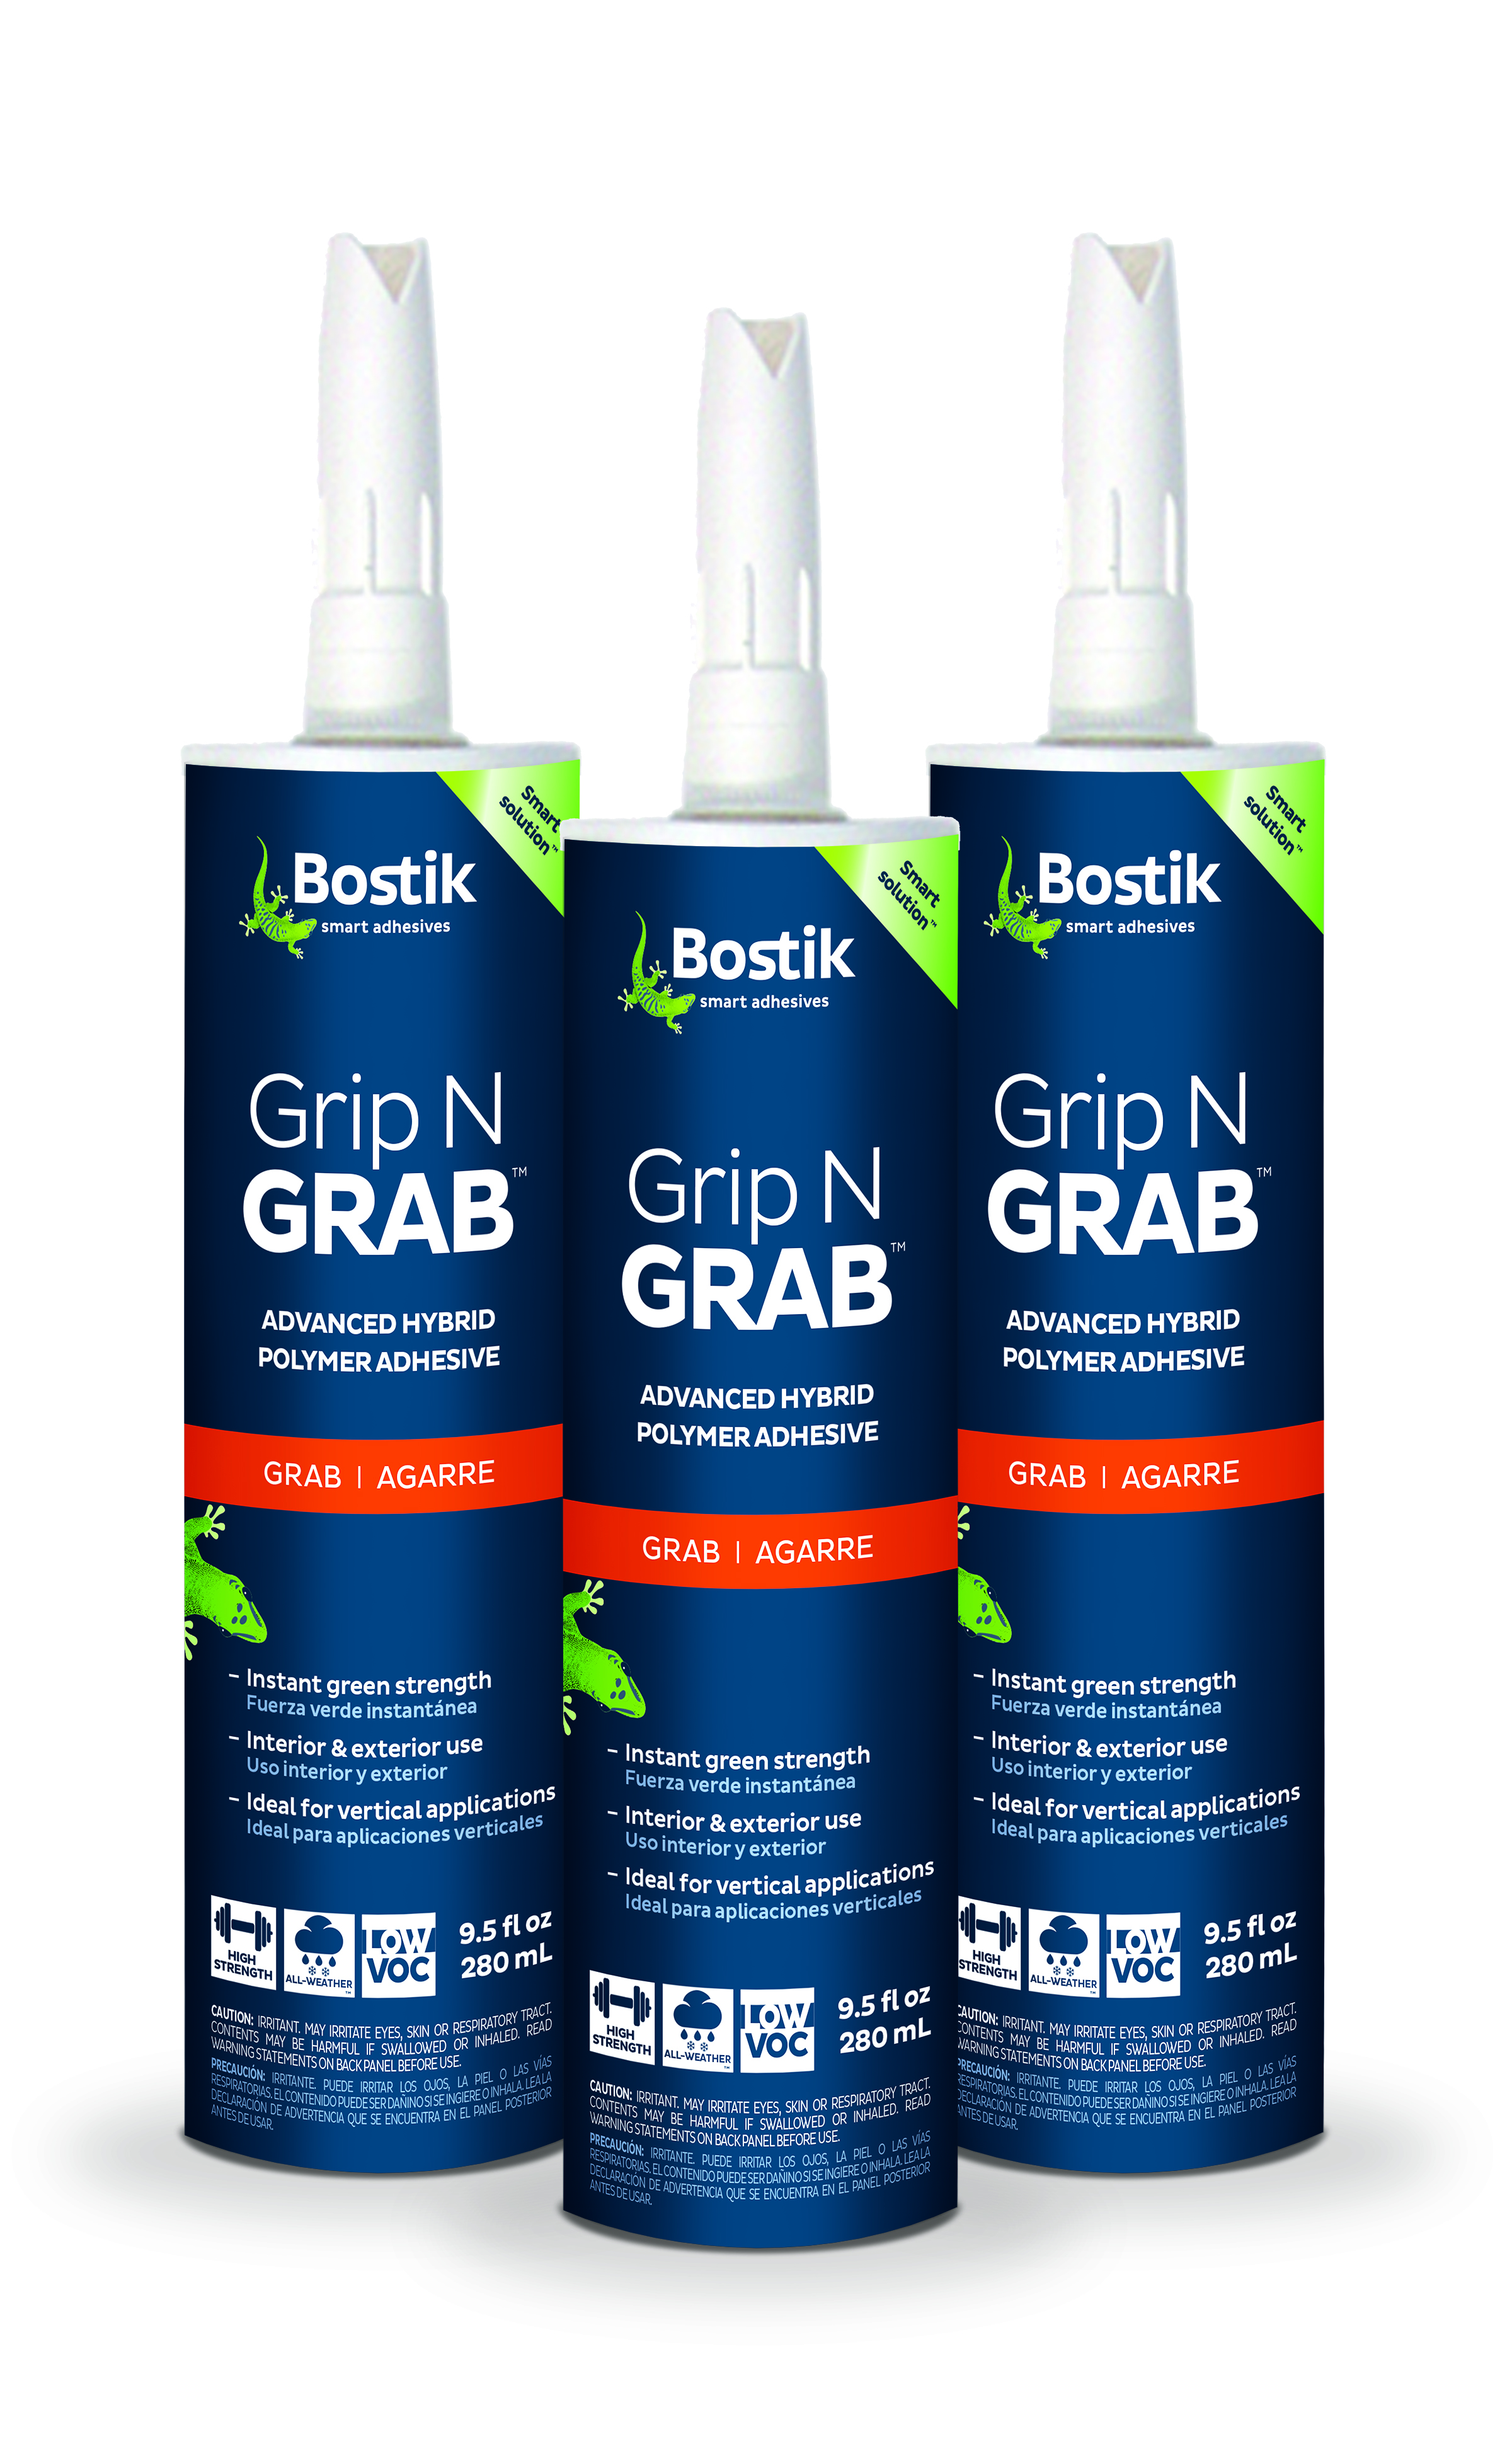 Bostik introduces Grip N Grab vertical adhesive